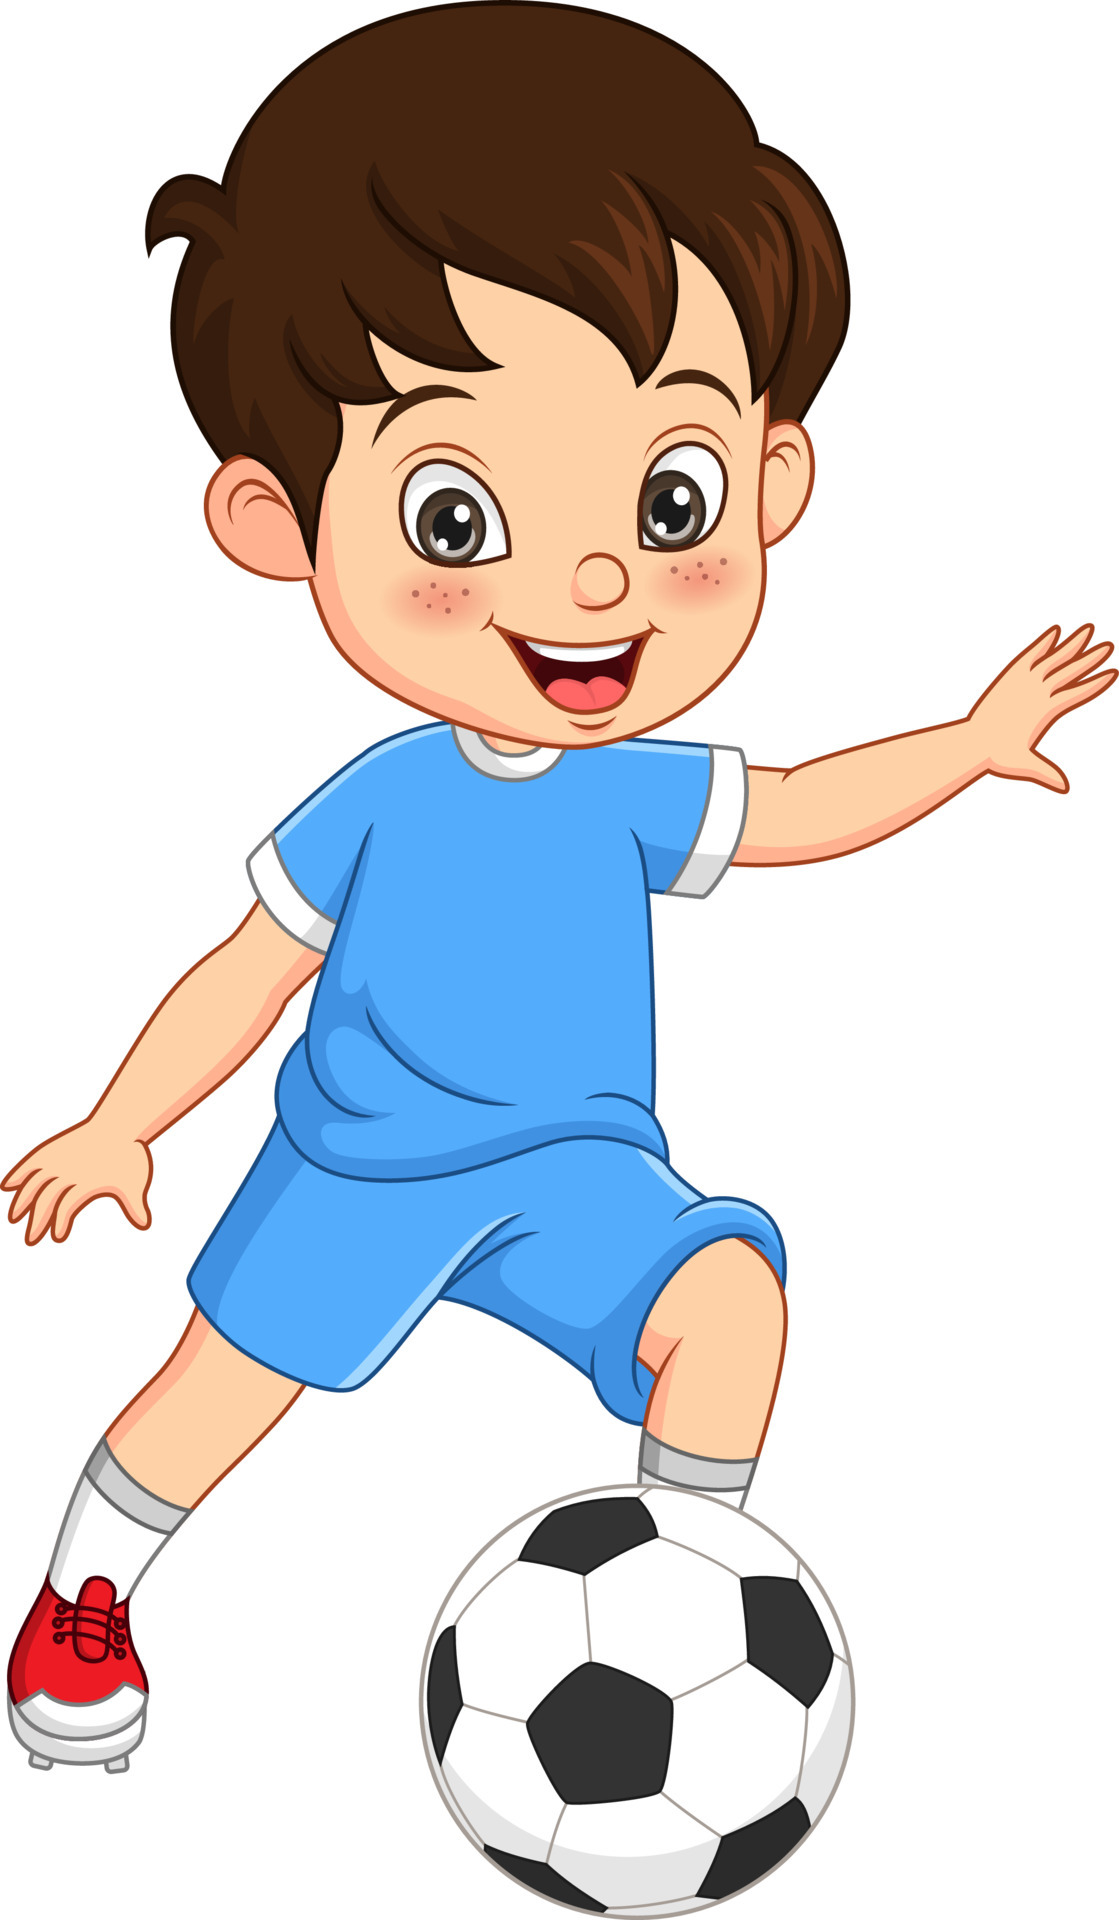 Cartoon little boy playing soccer 5112737 Vector Art at Vecteezy